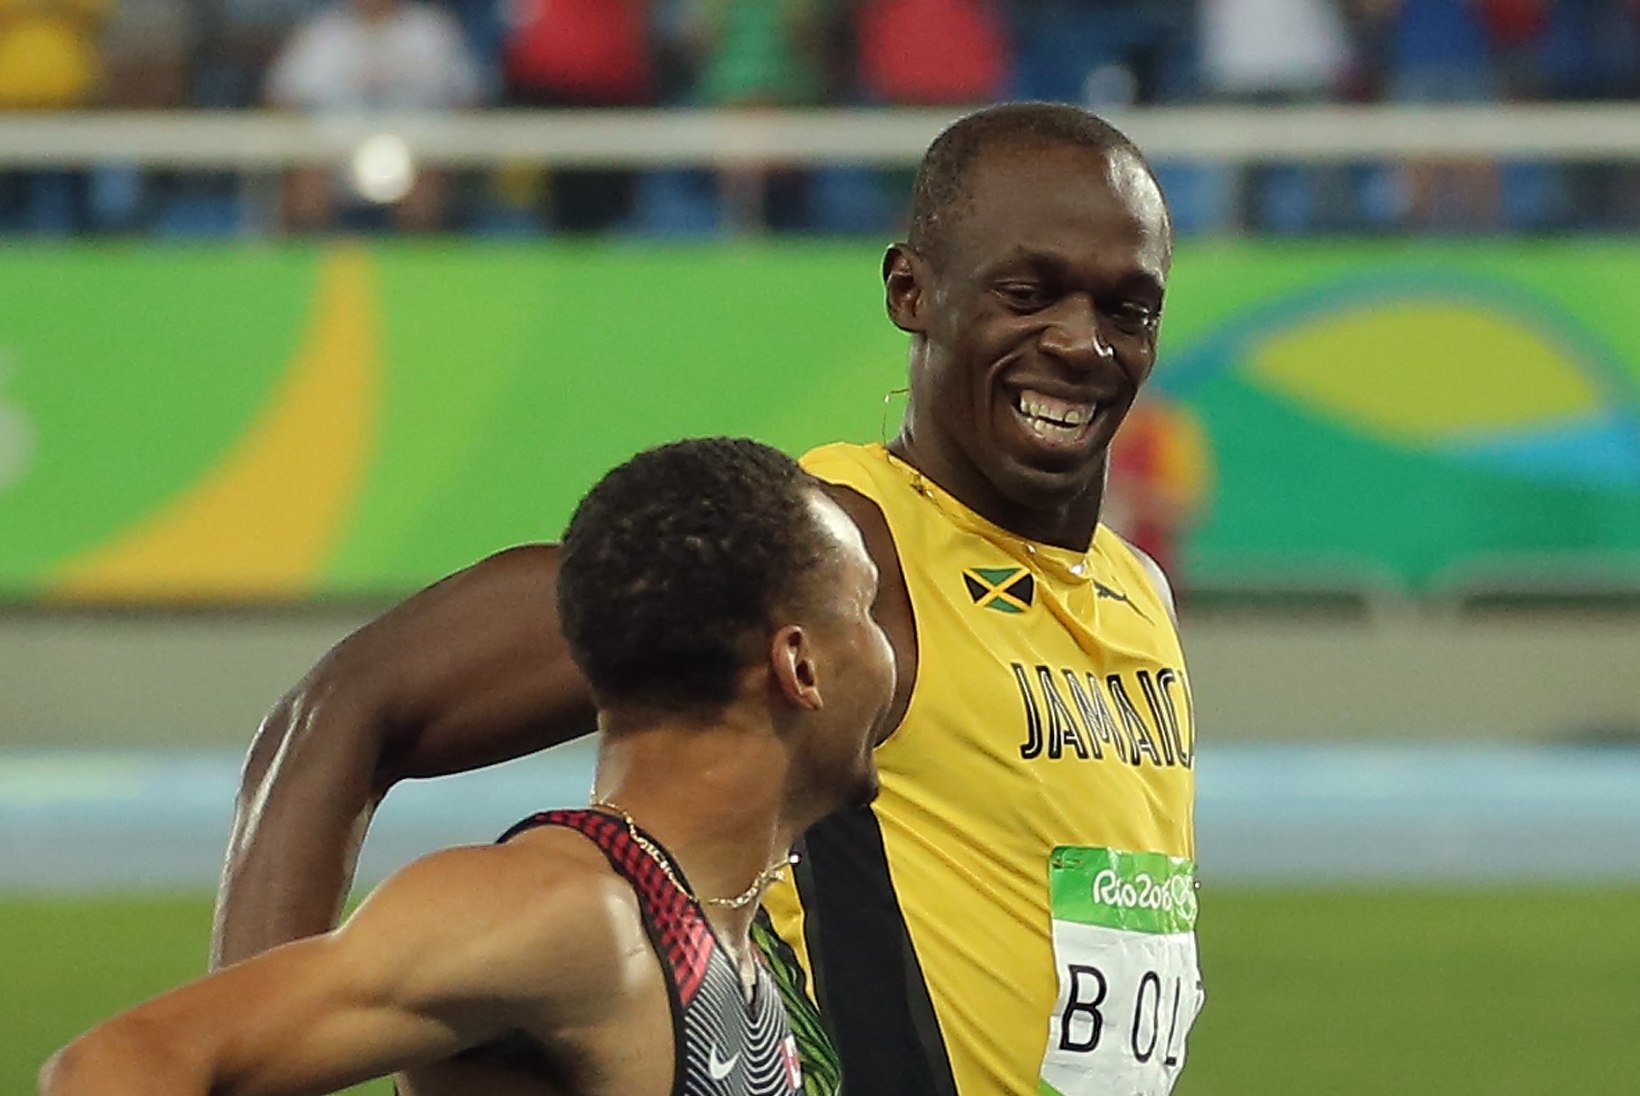 FOTOD JA VIDEO | Bolt lõpetas 200 meetri poolfinaali konkurendiga naerdes